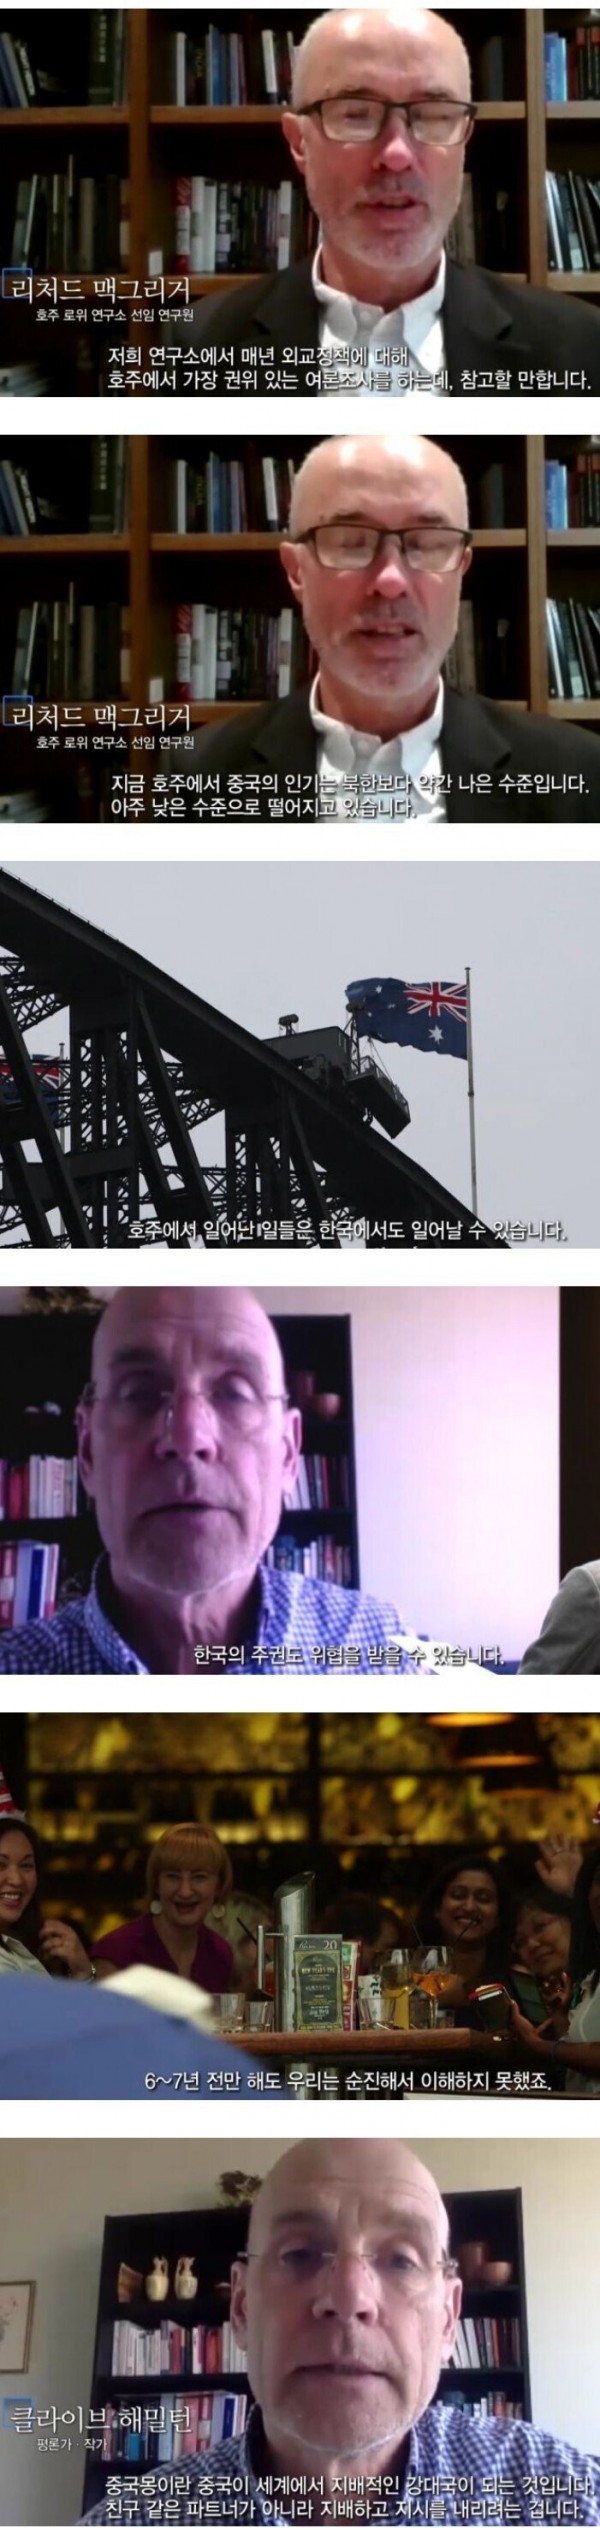 중국몽의 끔찍함을 깨달은 호주1.jpeg 중국몽의 끔찍함을 깨달은 호주